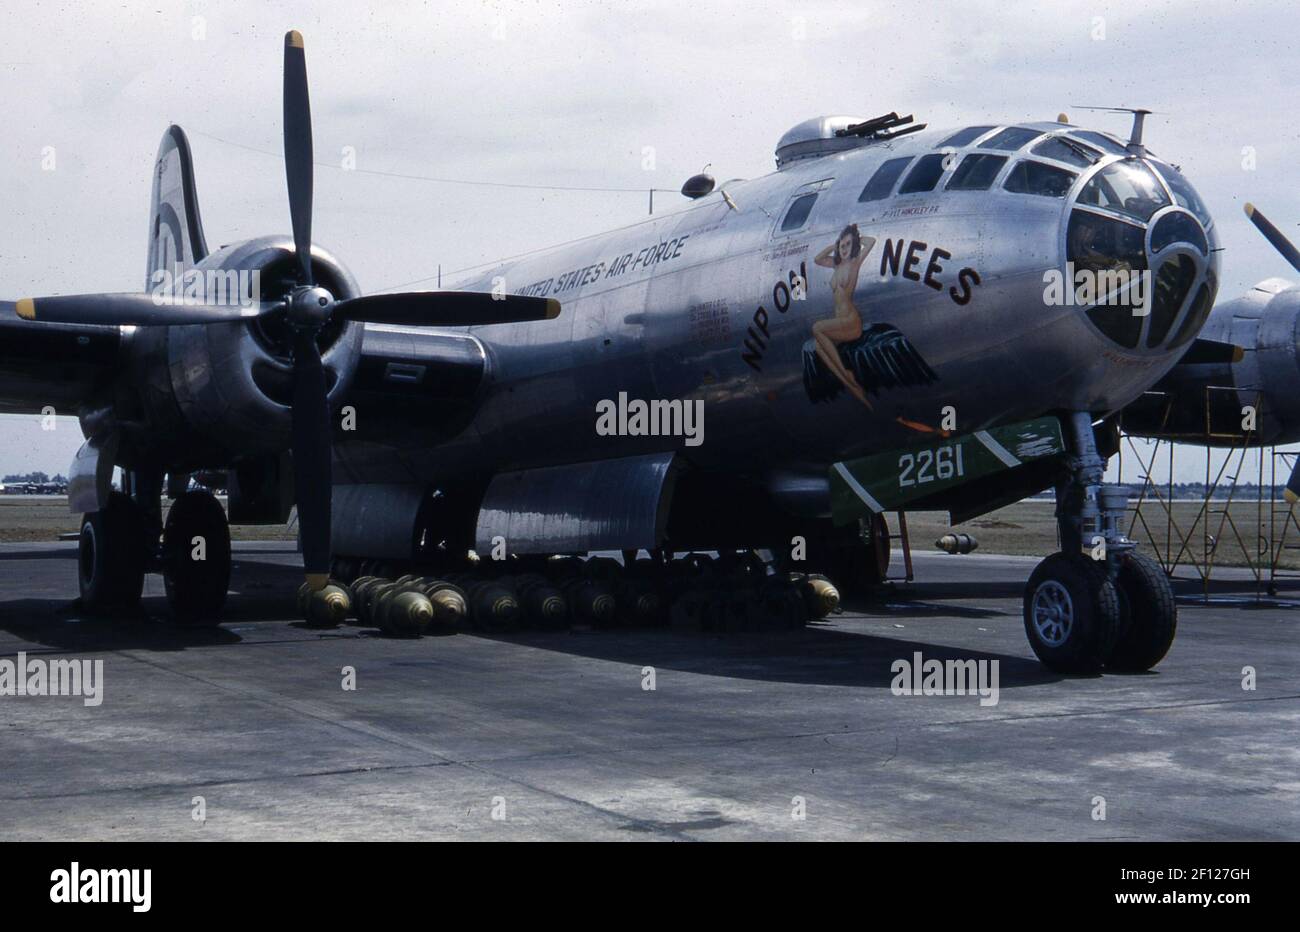 Vista frontal derecha de tres cuartos del Boeing B-29 Superfortress con bombas debajo del avión. El arte de la nariz incluye un apodo con dibujo, 'Nip on Nees'. Foto de stock